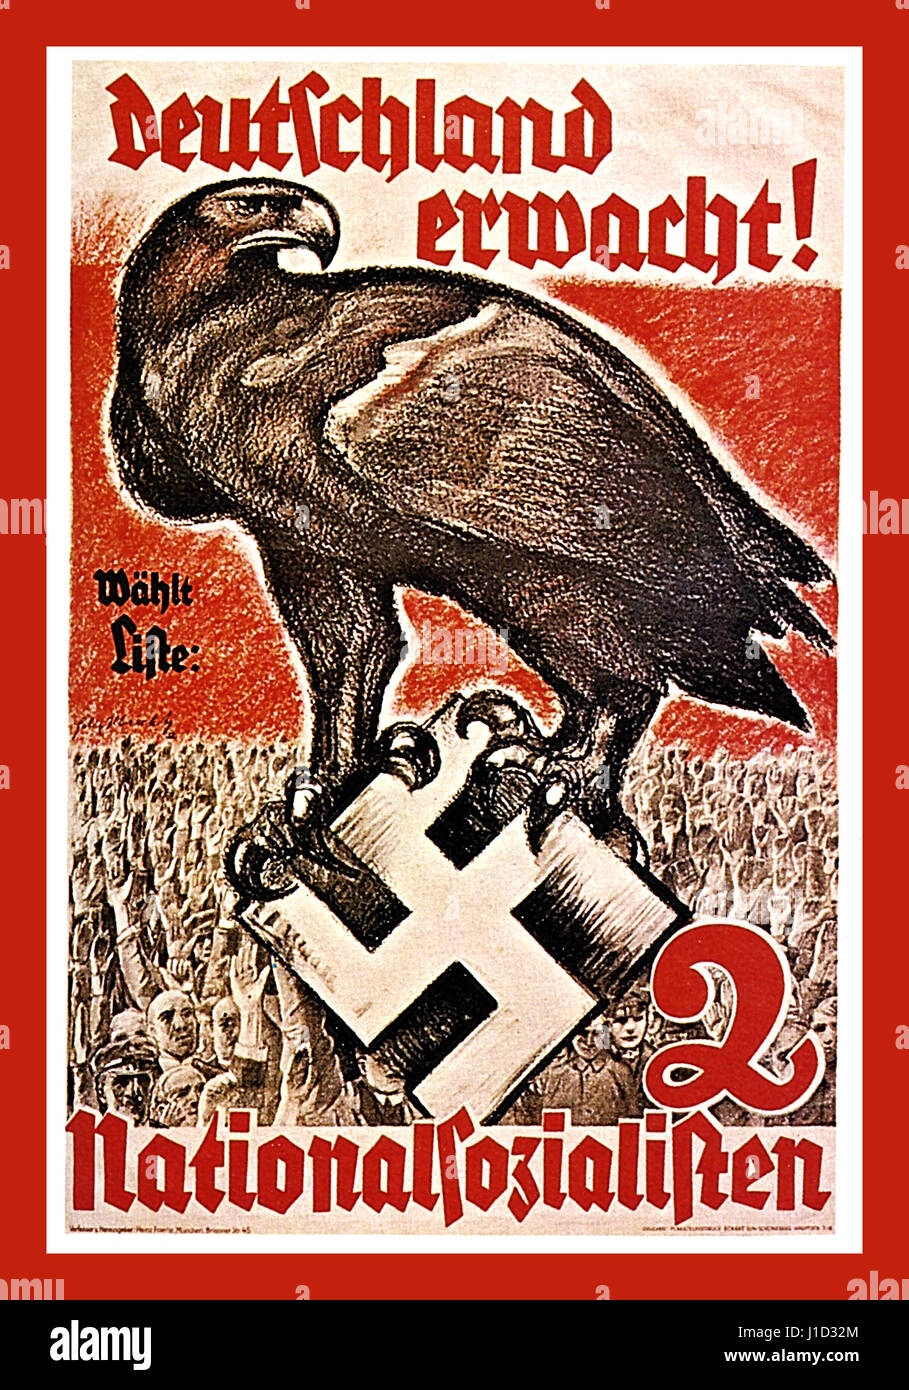 Deutschland Erwacht ! L'affiche de propagande nazie allemande des années 1930 pour le Parti socialiste national disant « L'ALLEMAGNE S'ÉVEILLE » « choisir la vie » avec un aigle allemand qui embrase un symbole éclatant de Swastika Banque D'Images